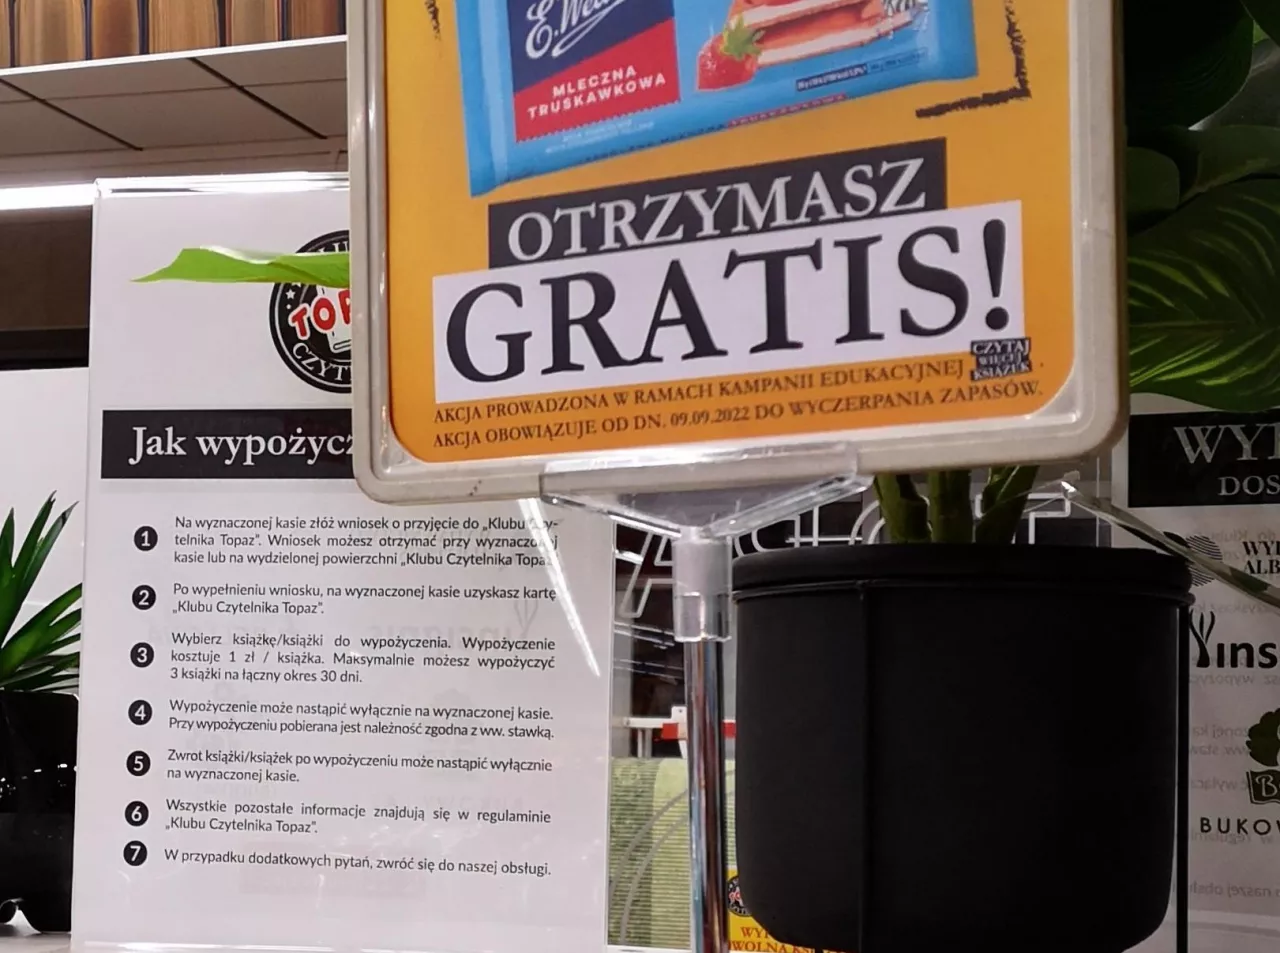 Topaz uruchomił klub czytelnika. W niektórych sklepach sieci pojawiły się czytelnie (fot. wiadomoscihandlowe.pl)